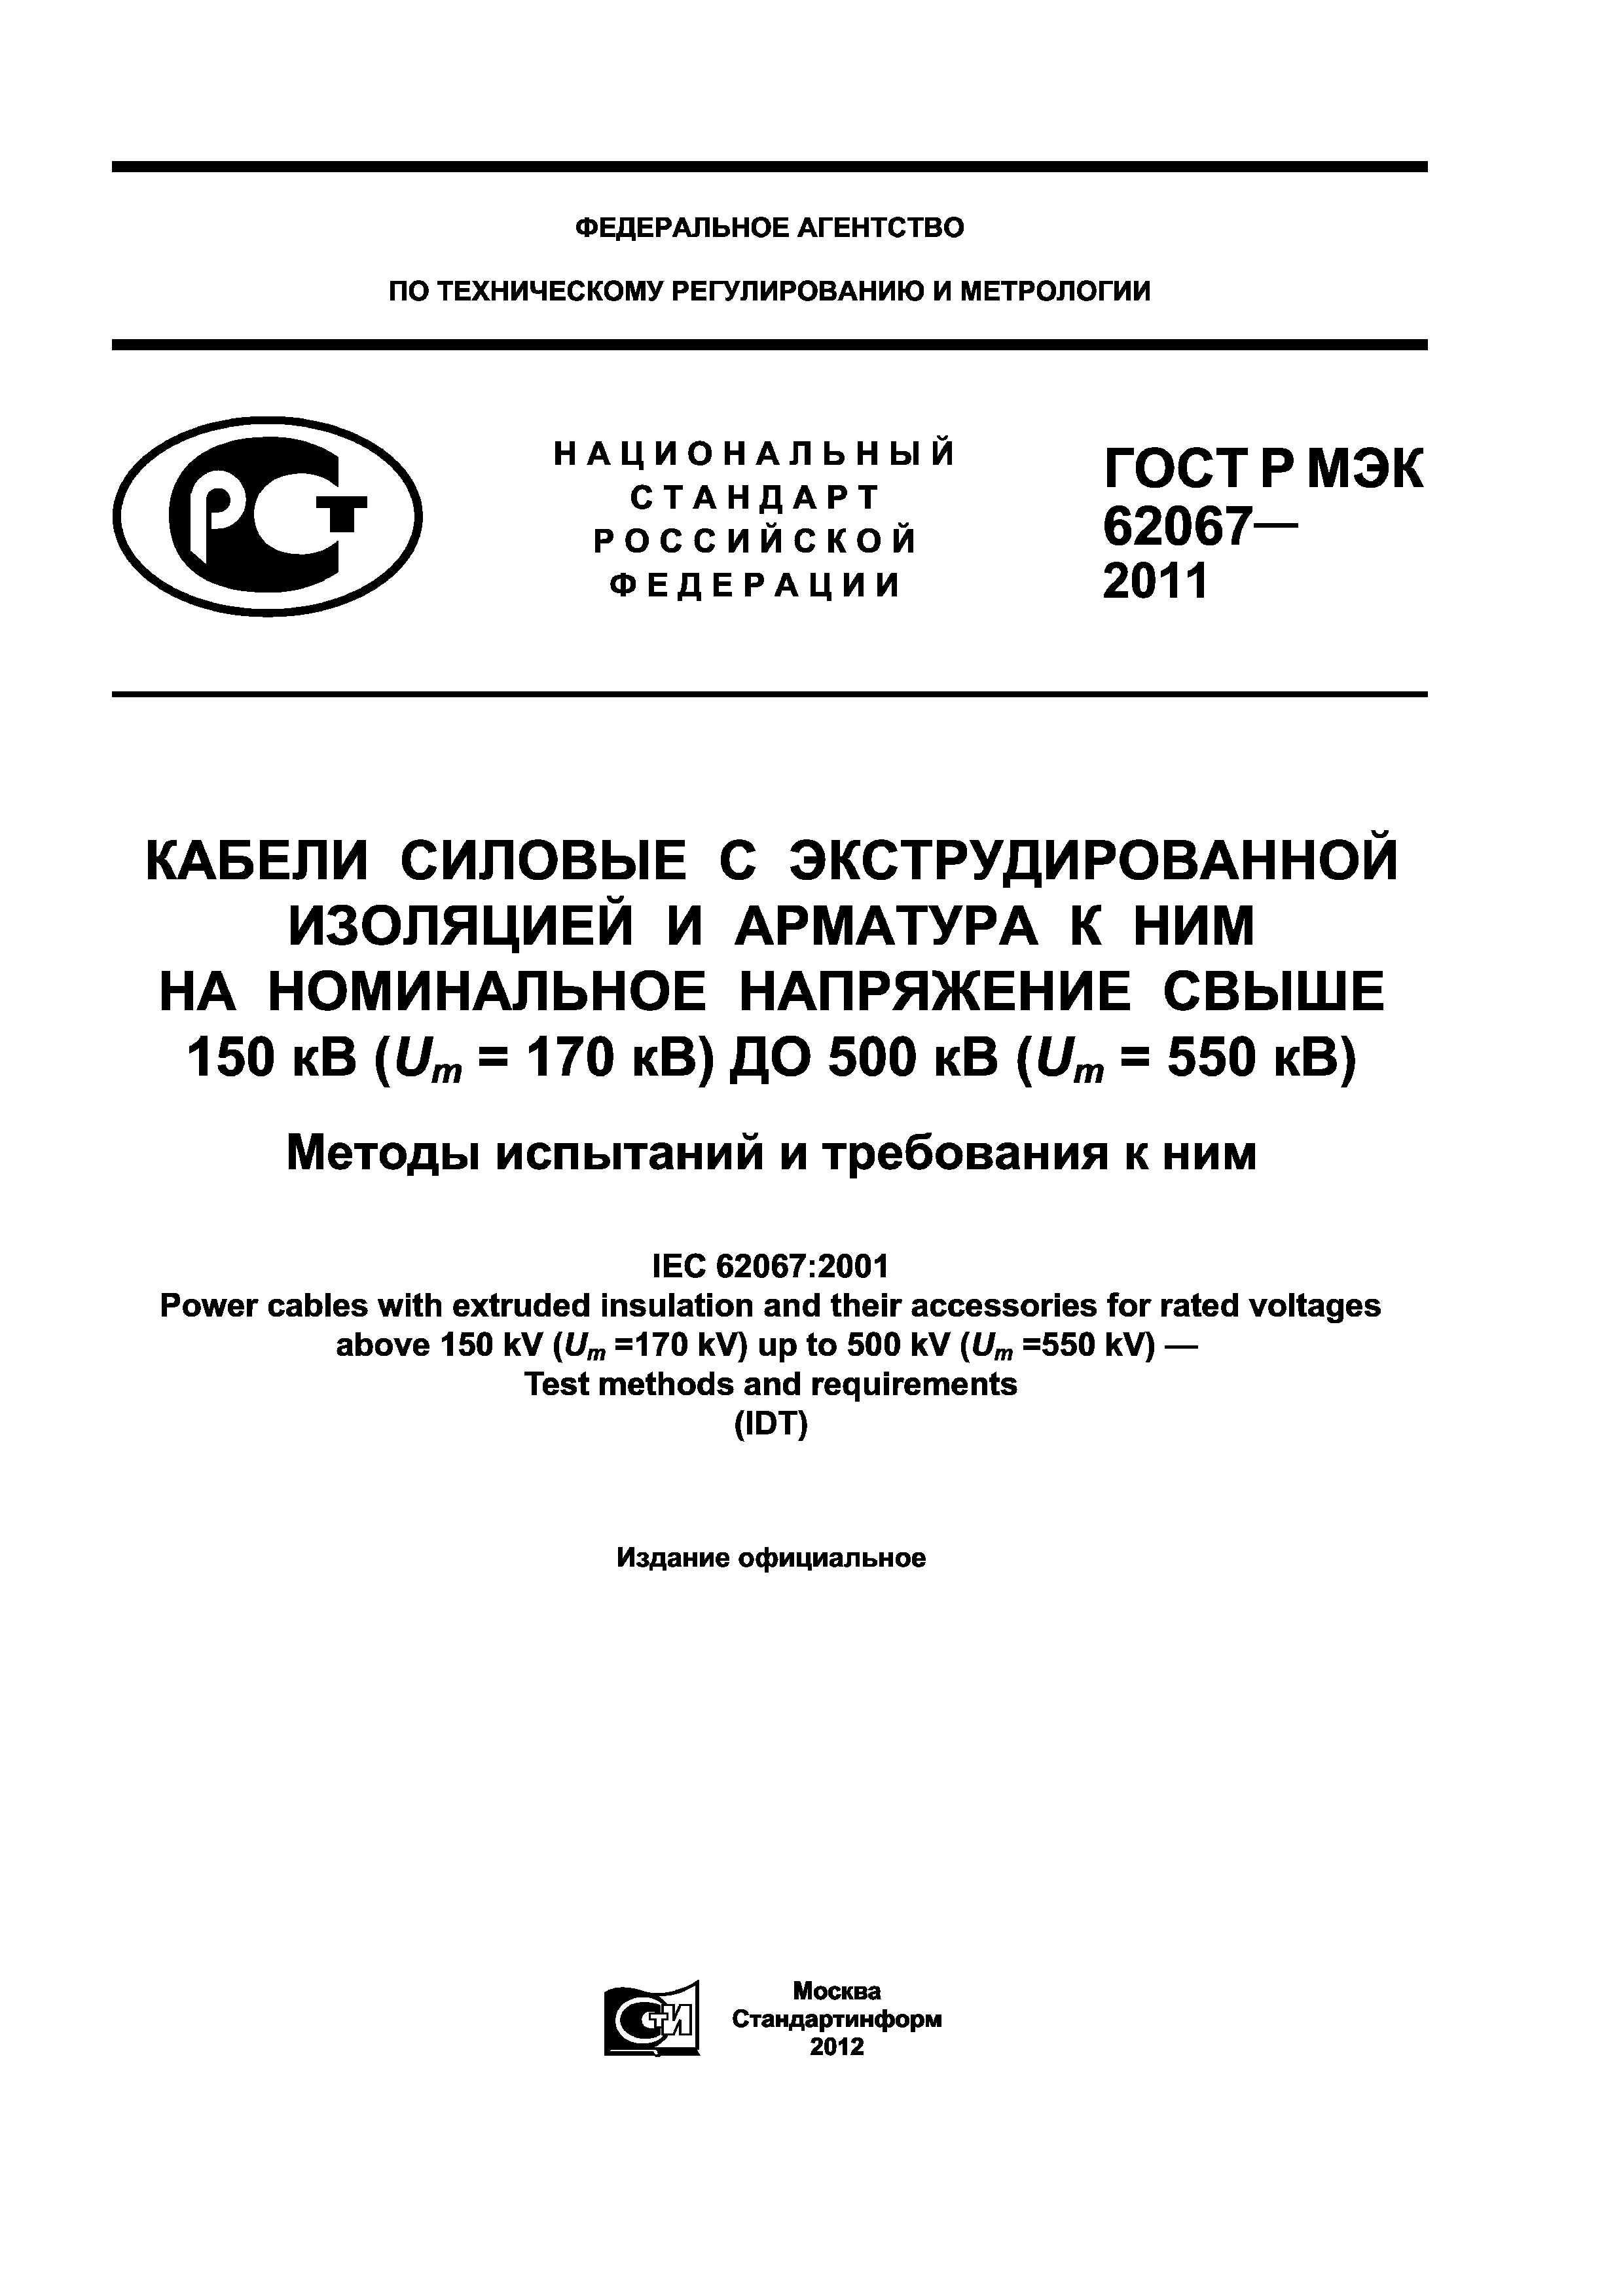 ГОСТ Р МЭК 62067-2011